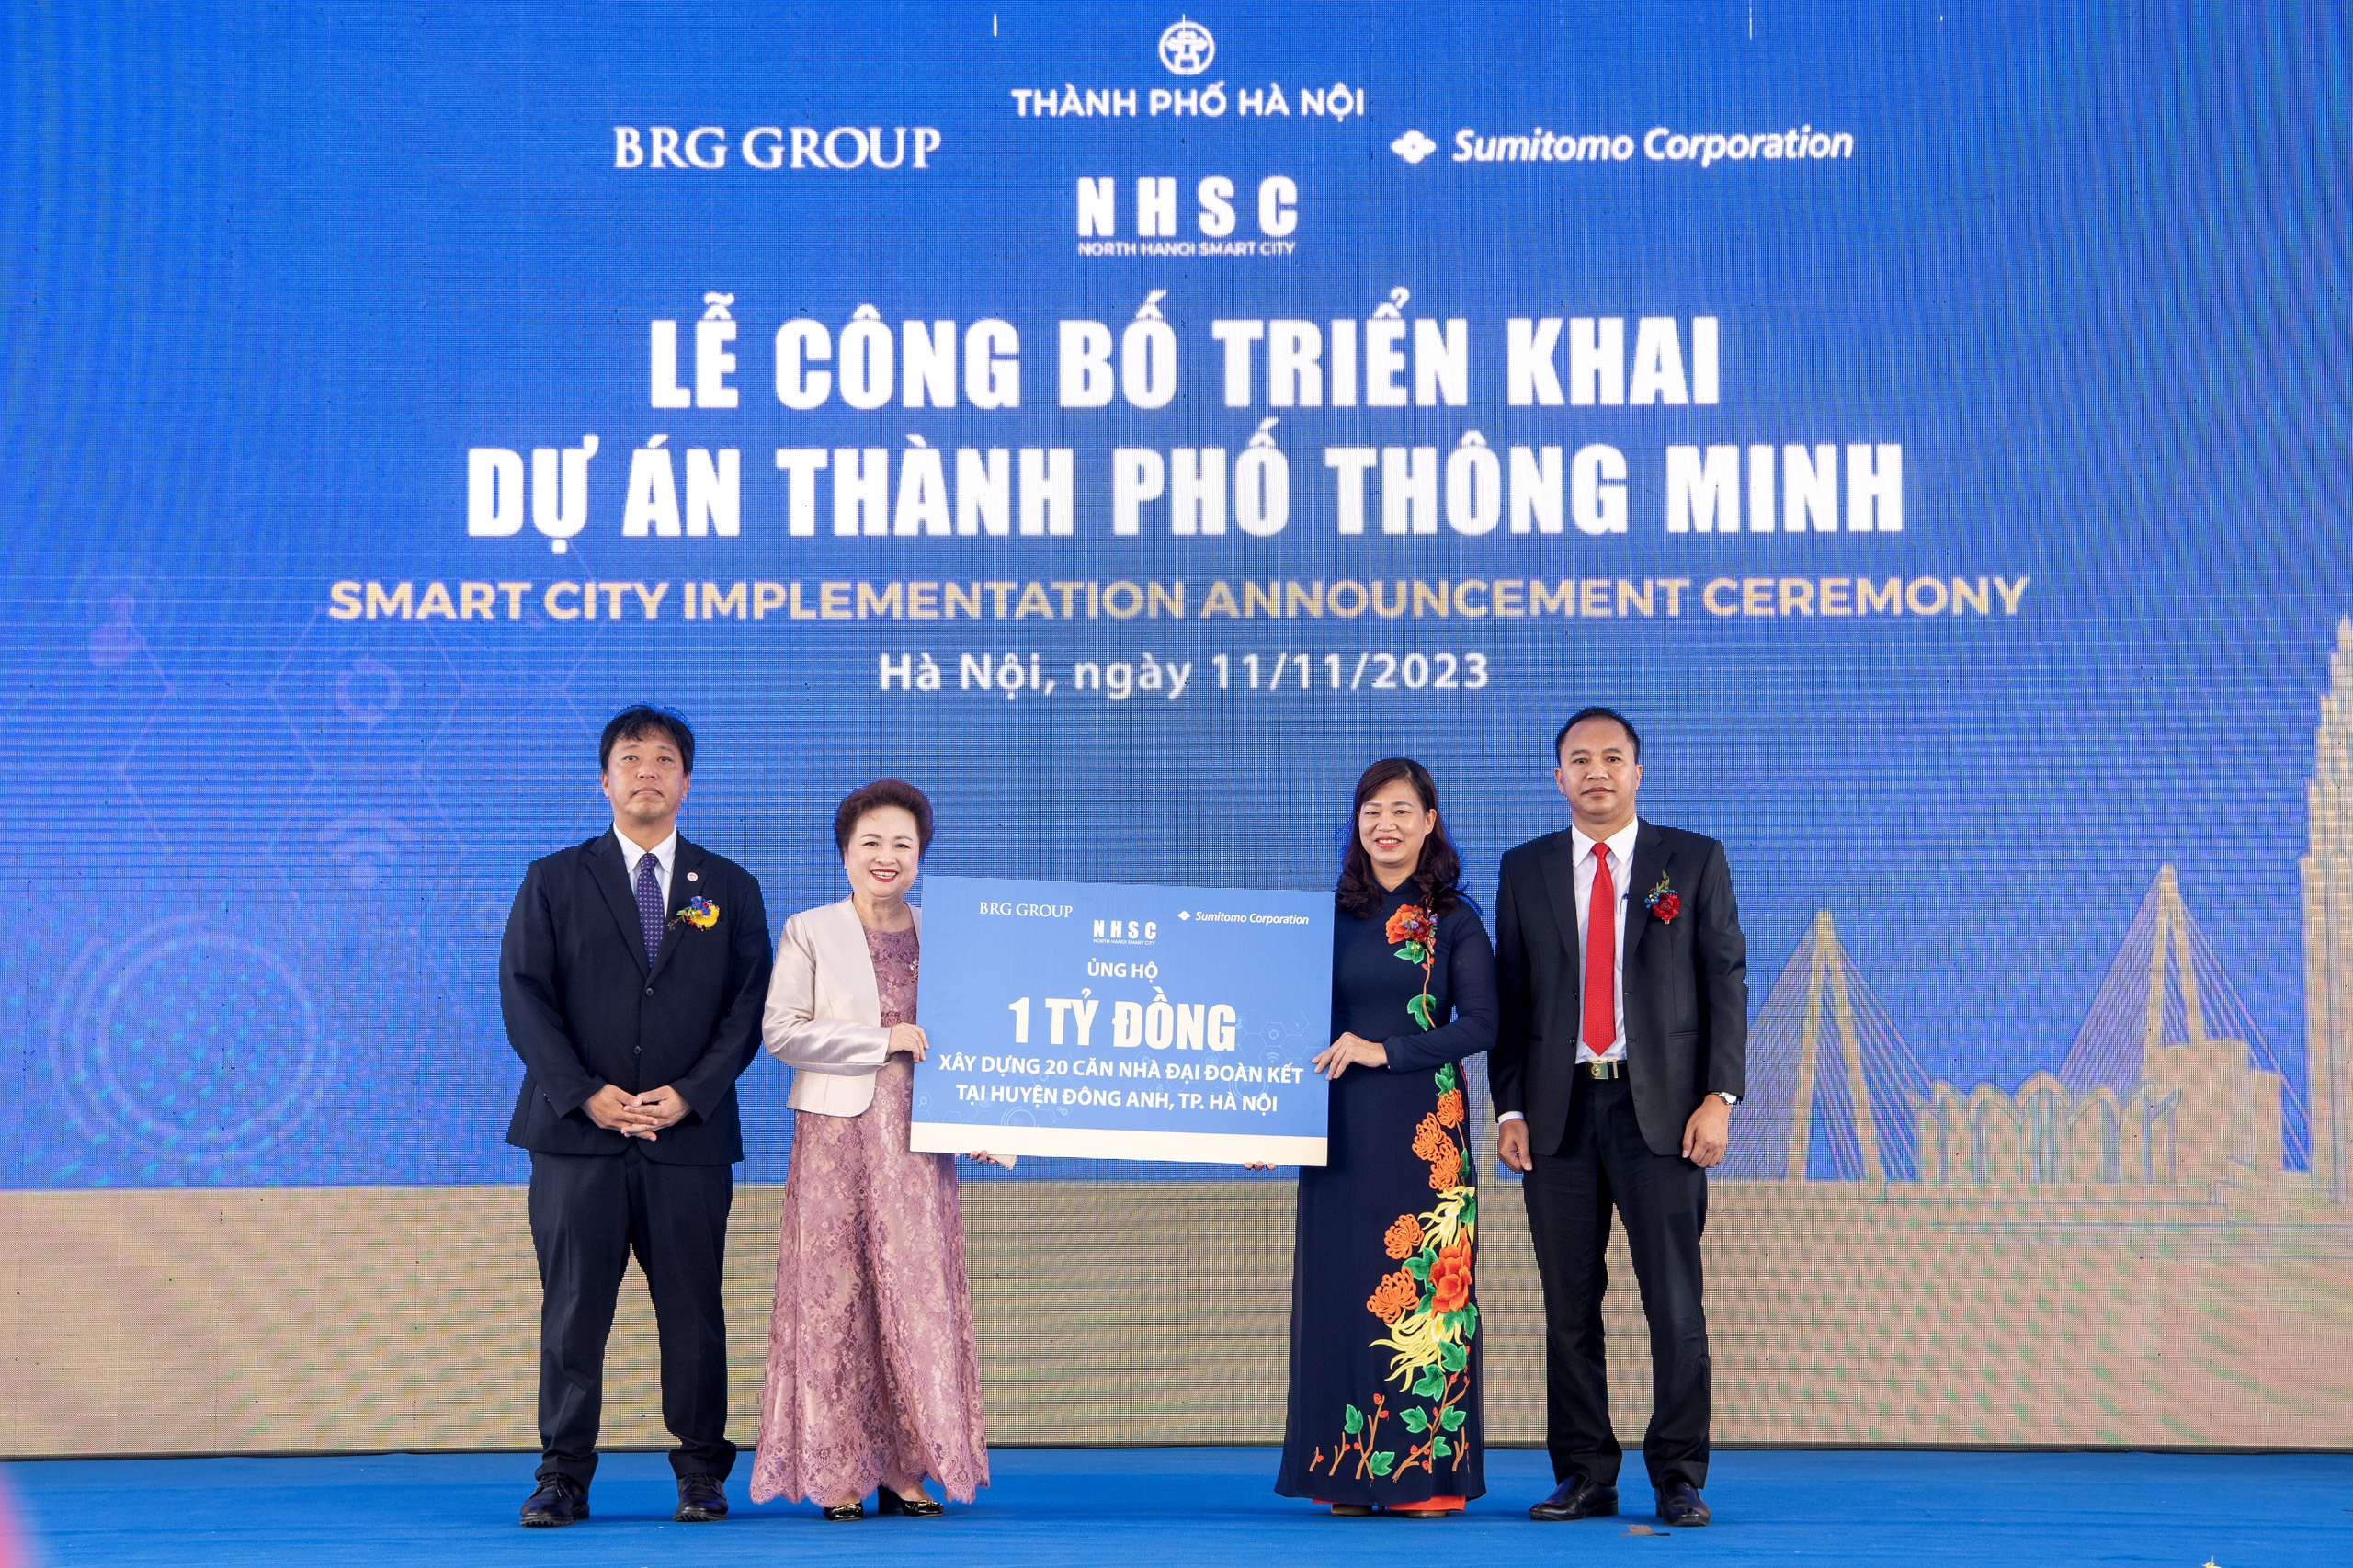 Lãnh đạo Công ty Thành phố Thông minh Bắc Hà Nội trao ủng hộ 1 tỷ đồng xây dựng 20 căn nhà đại đoàn kết tại huyện Đông Anh.